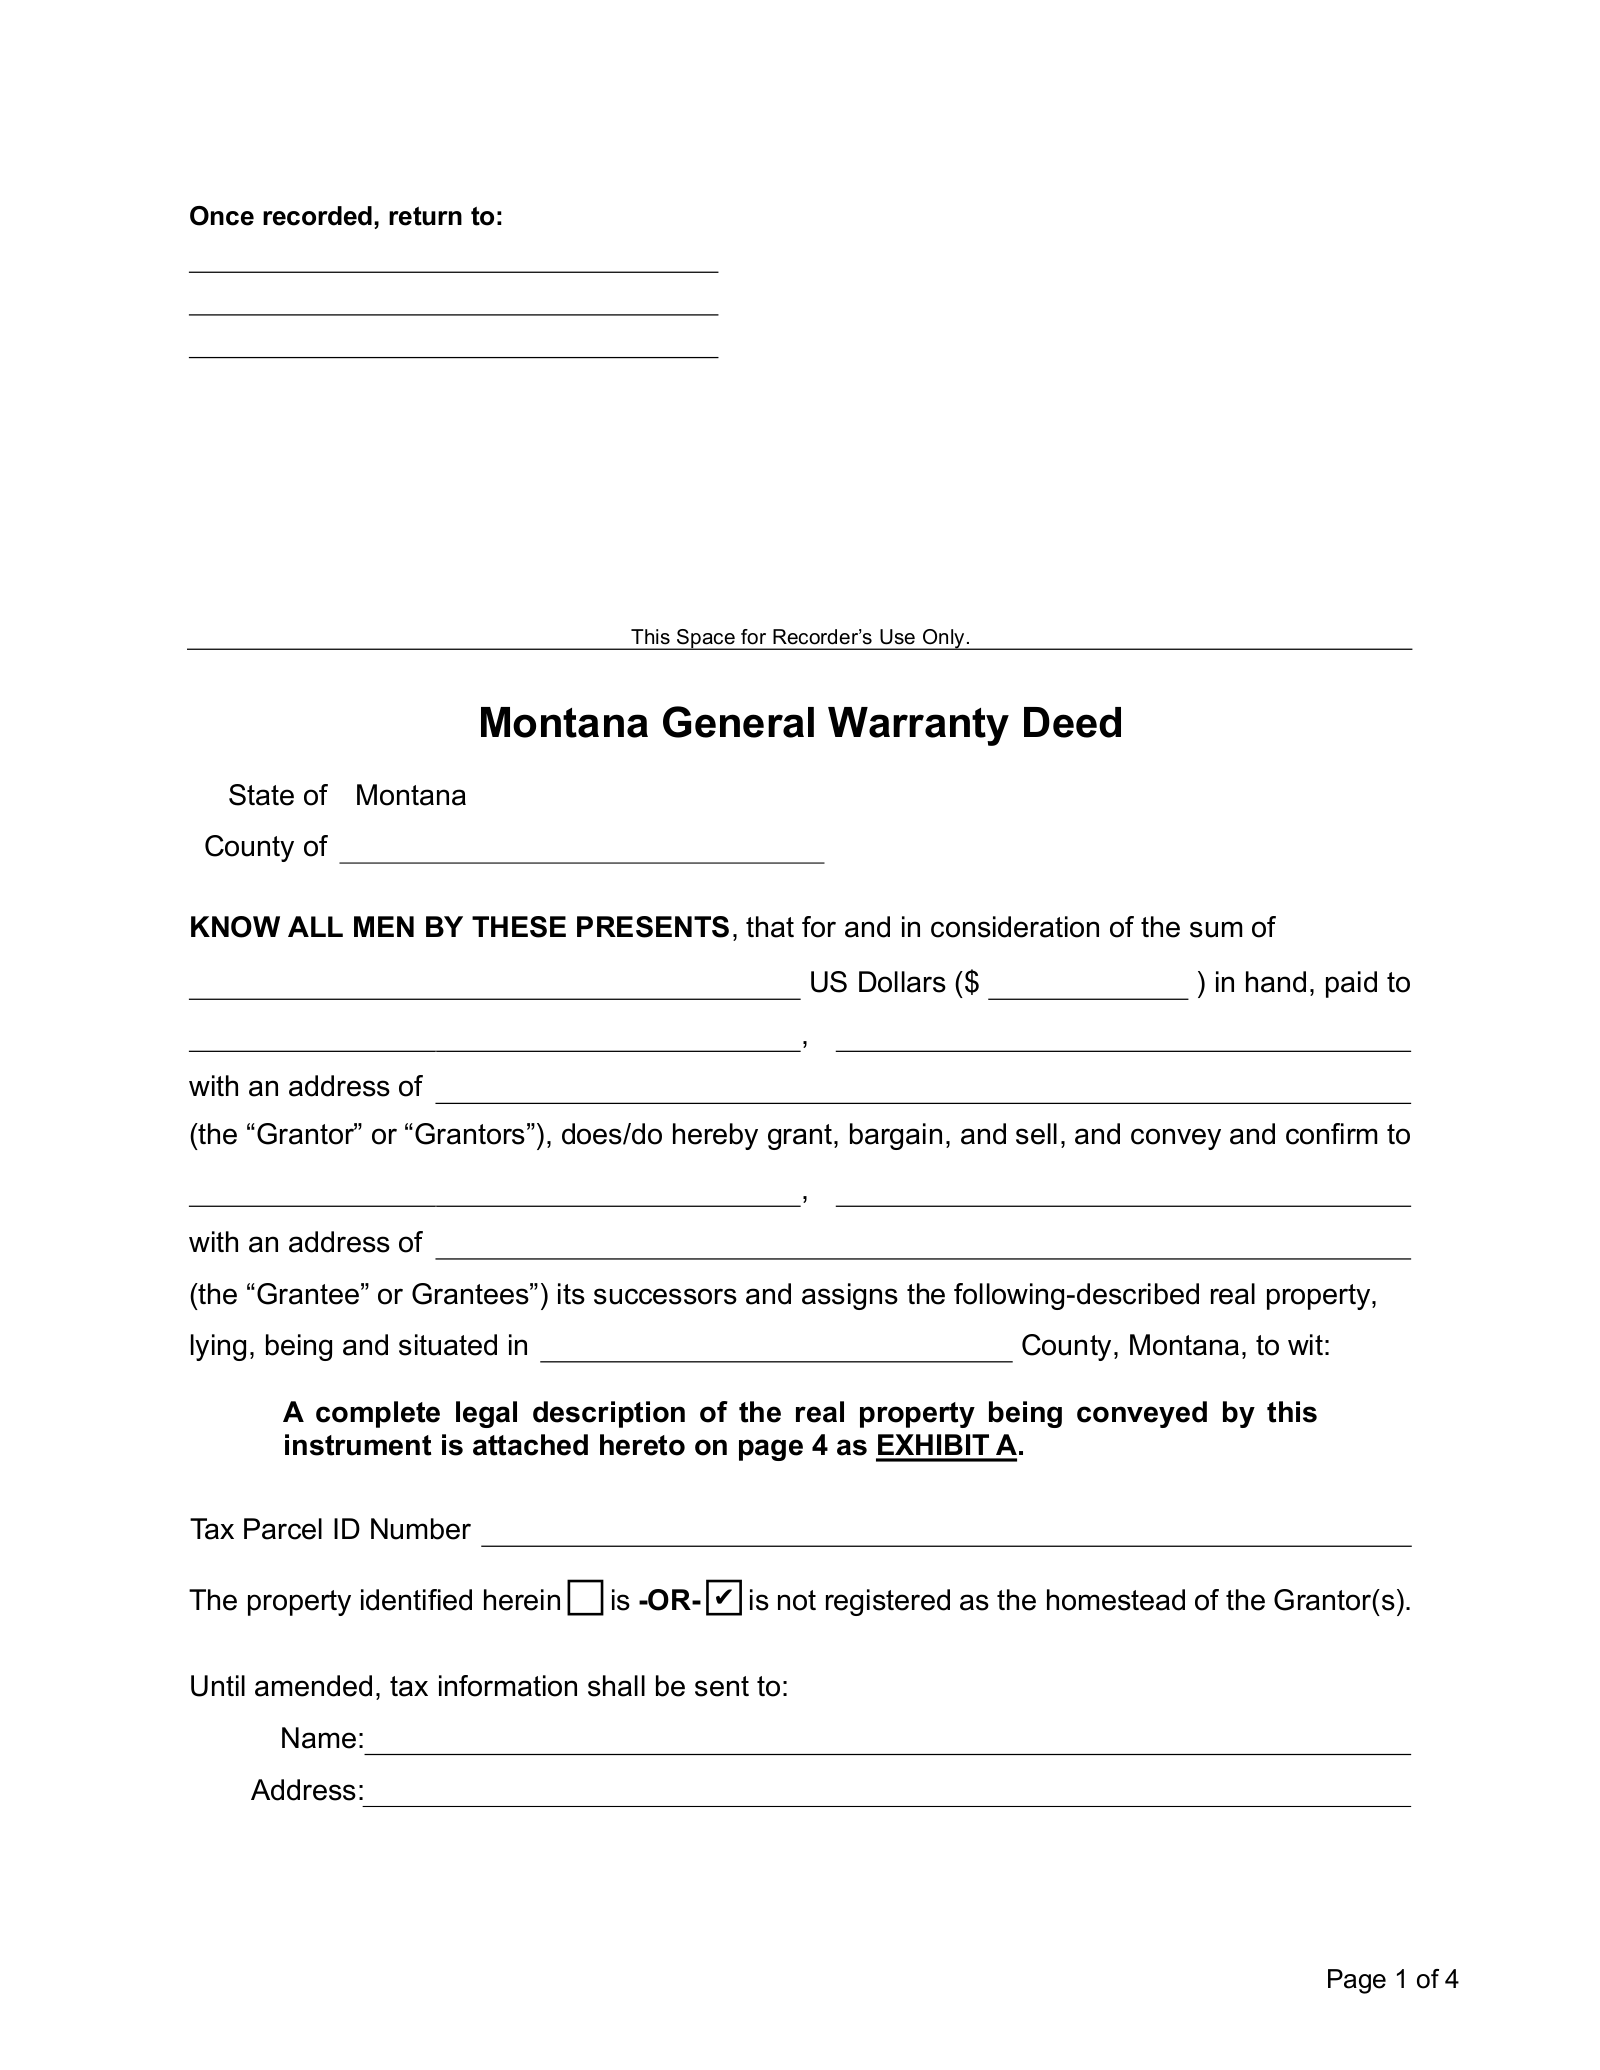 Montana General Warranty Deed Form